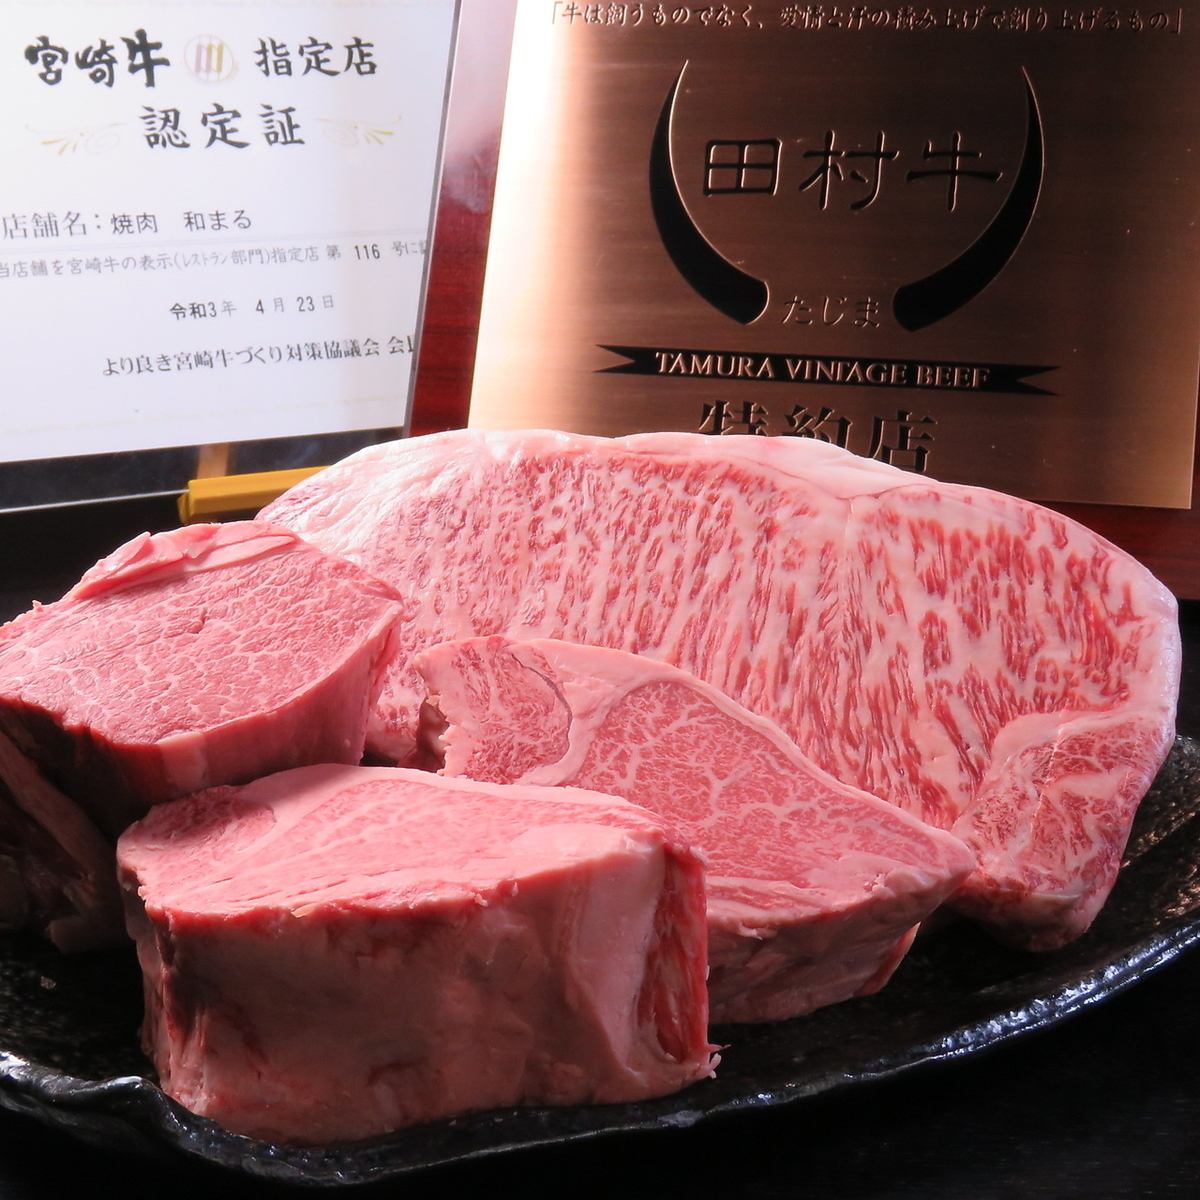 能以合理的價格品嚐到日本有名的和牛的餐廳